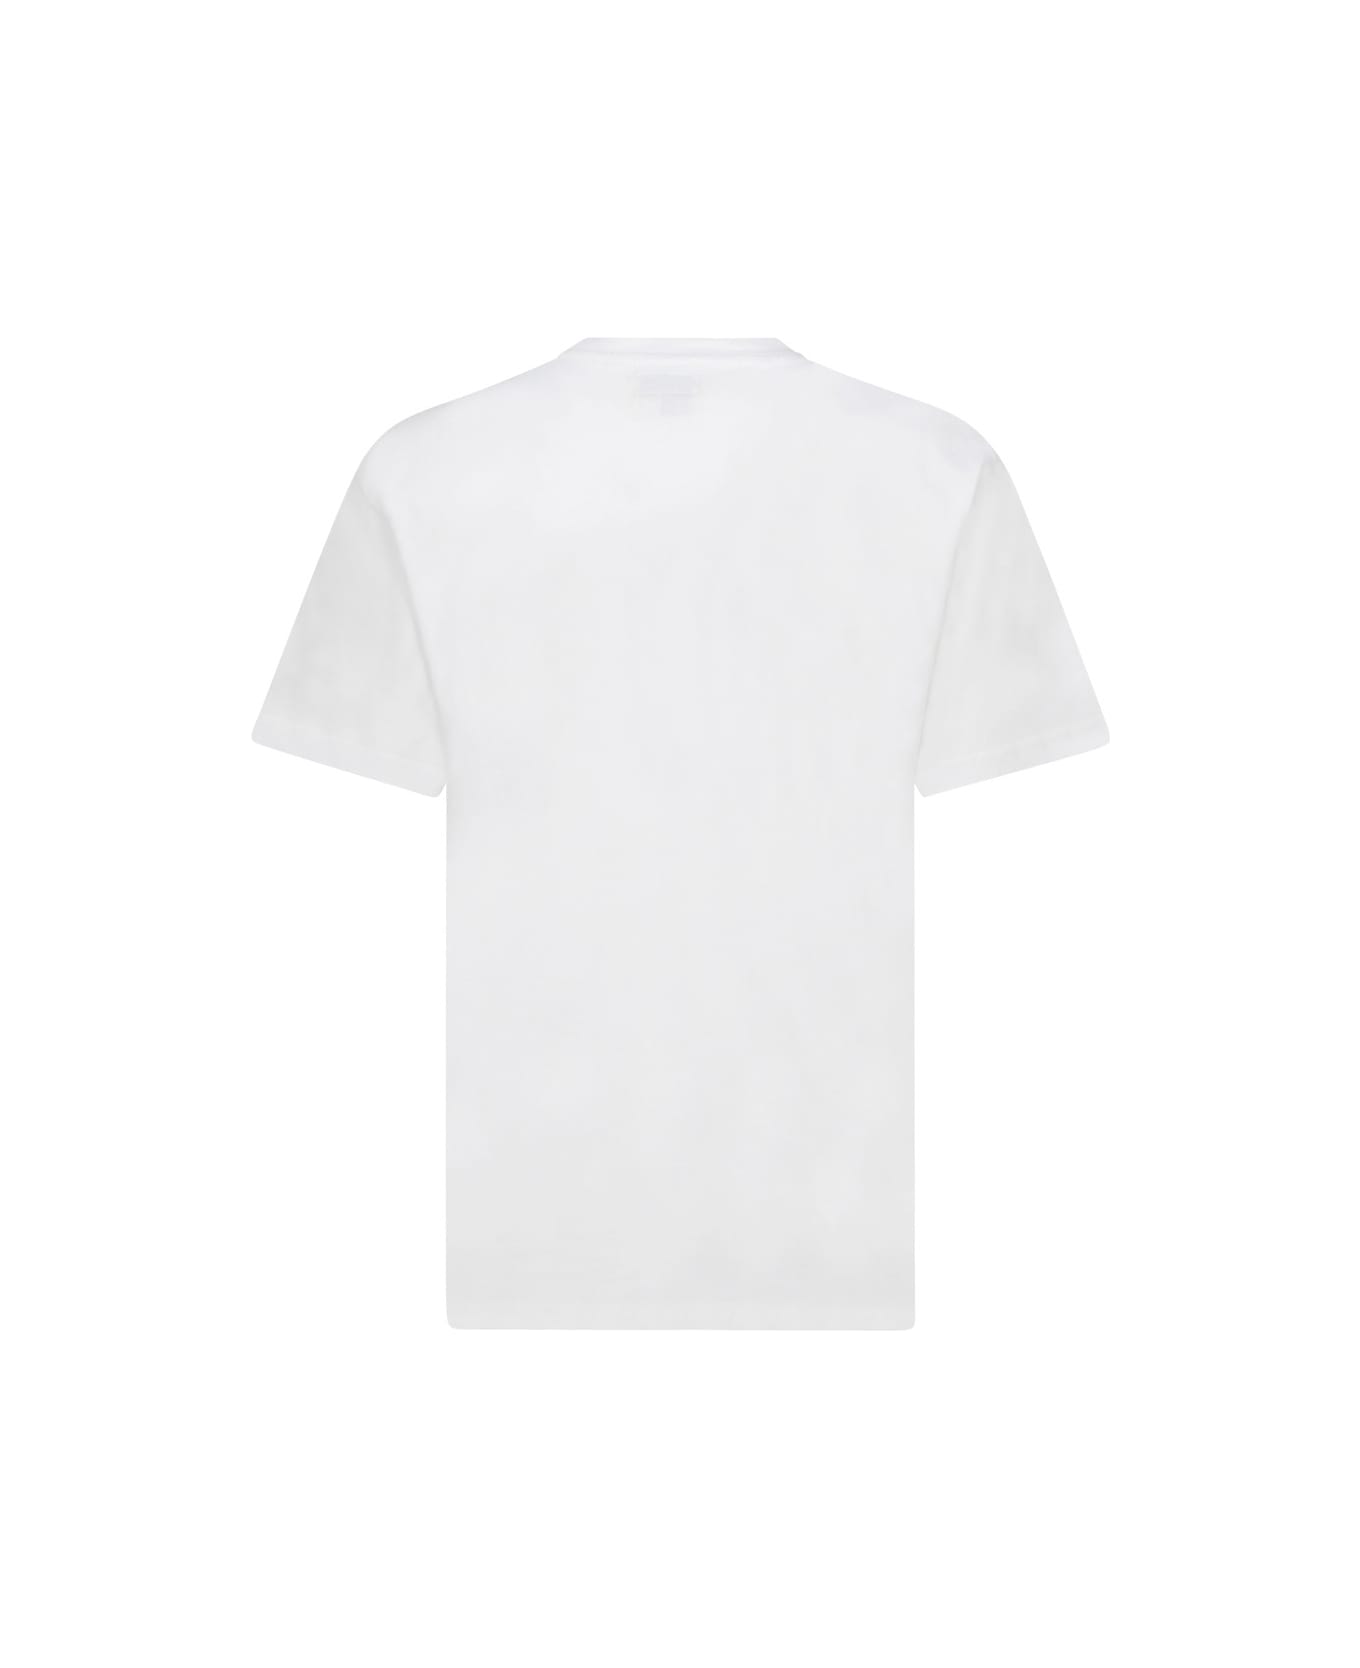 Market Iron T-shirt - WHITE